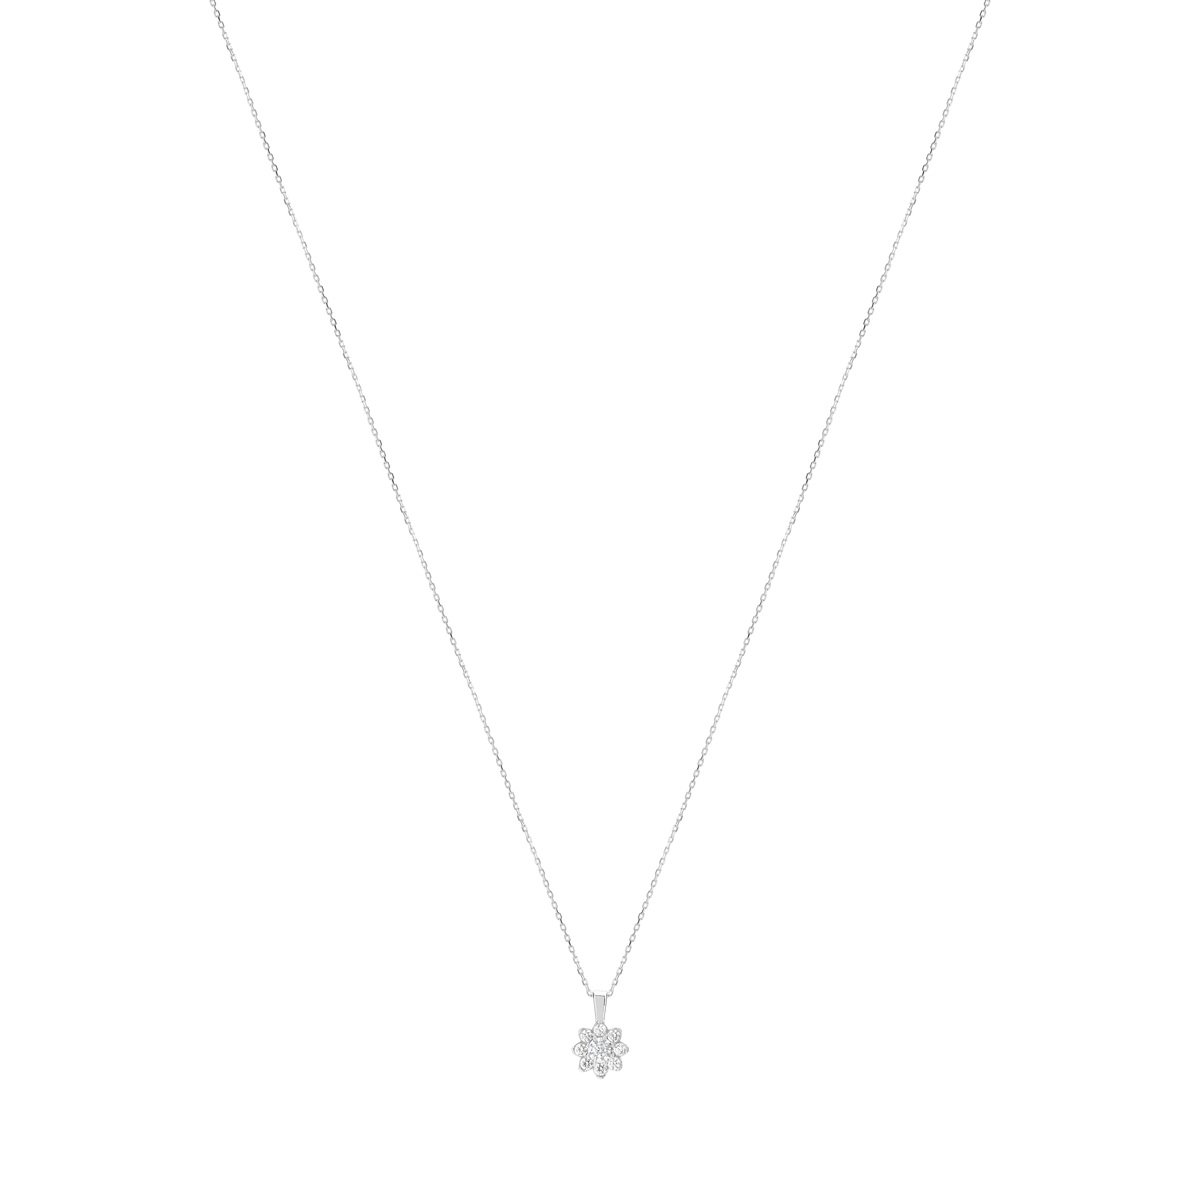 Collier or 750 blanc fleur diamants synthétiques 0,40 carat 42 cm